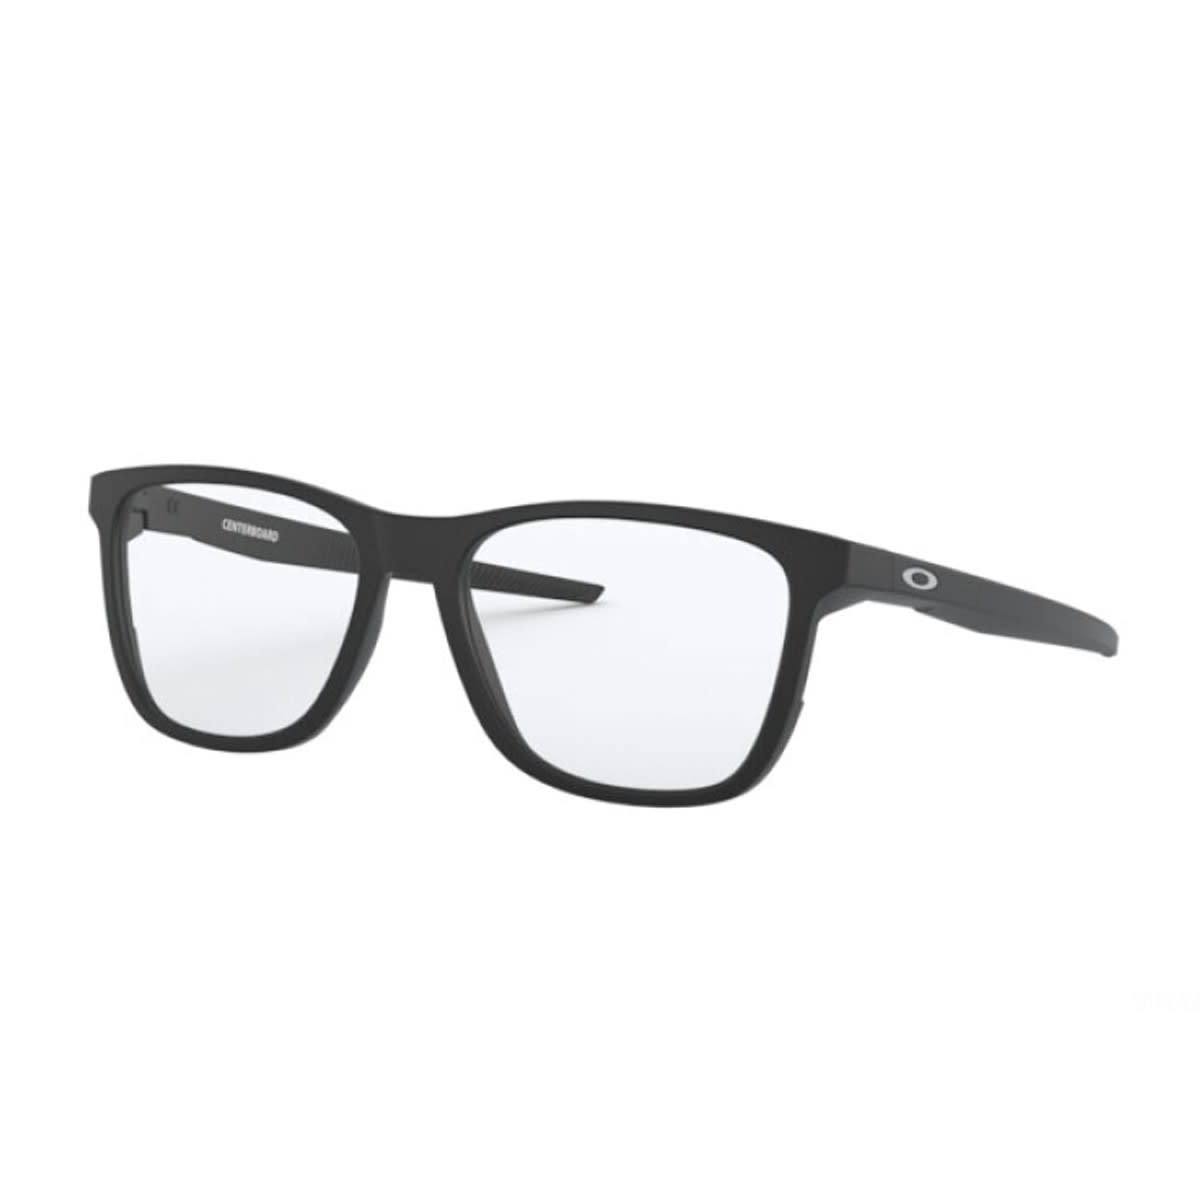 Ox8163 Glasses